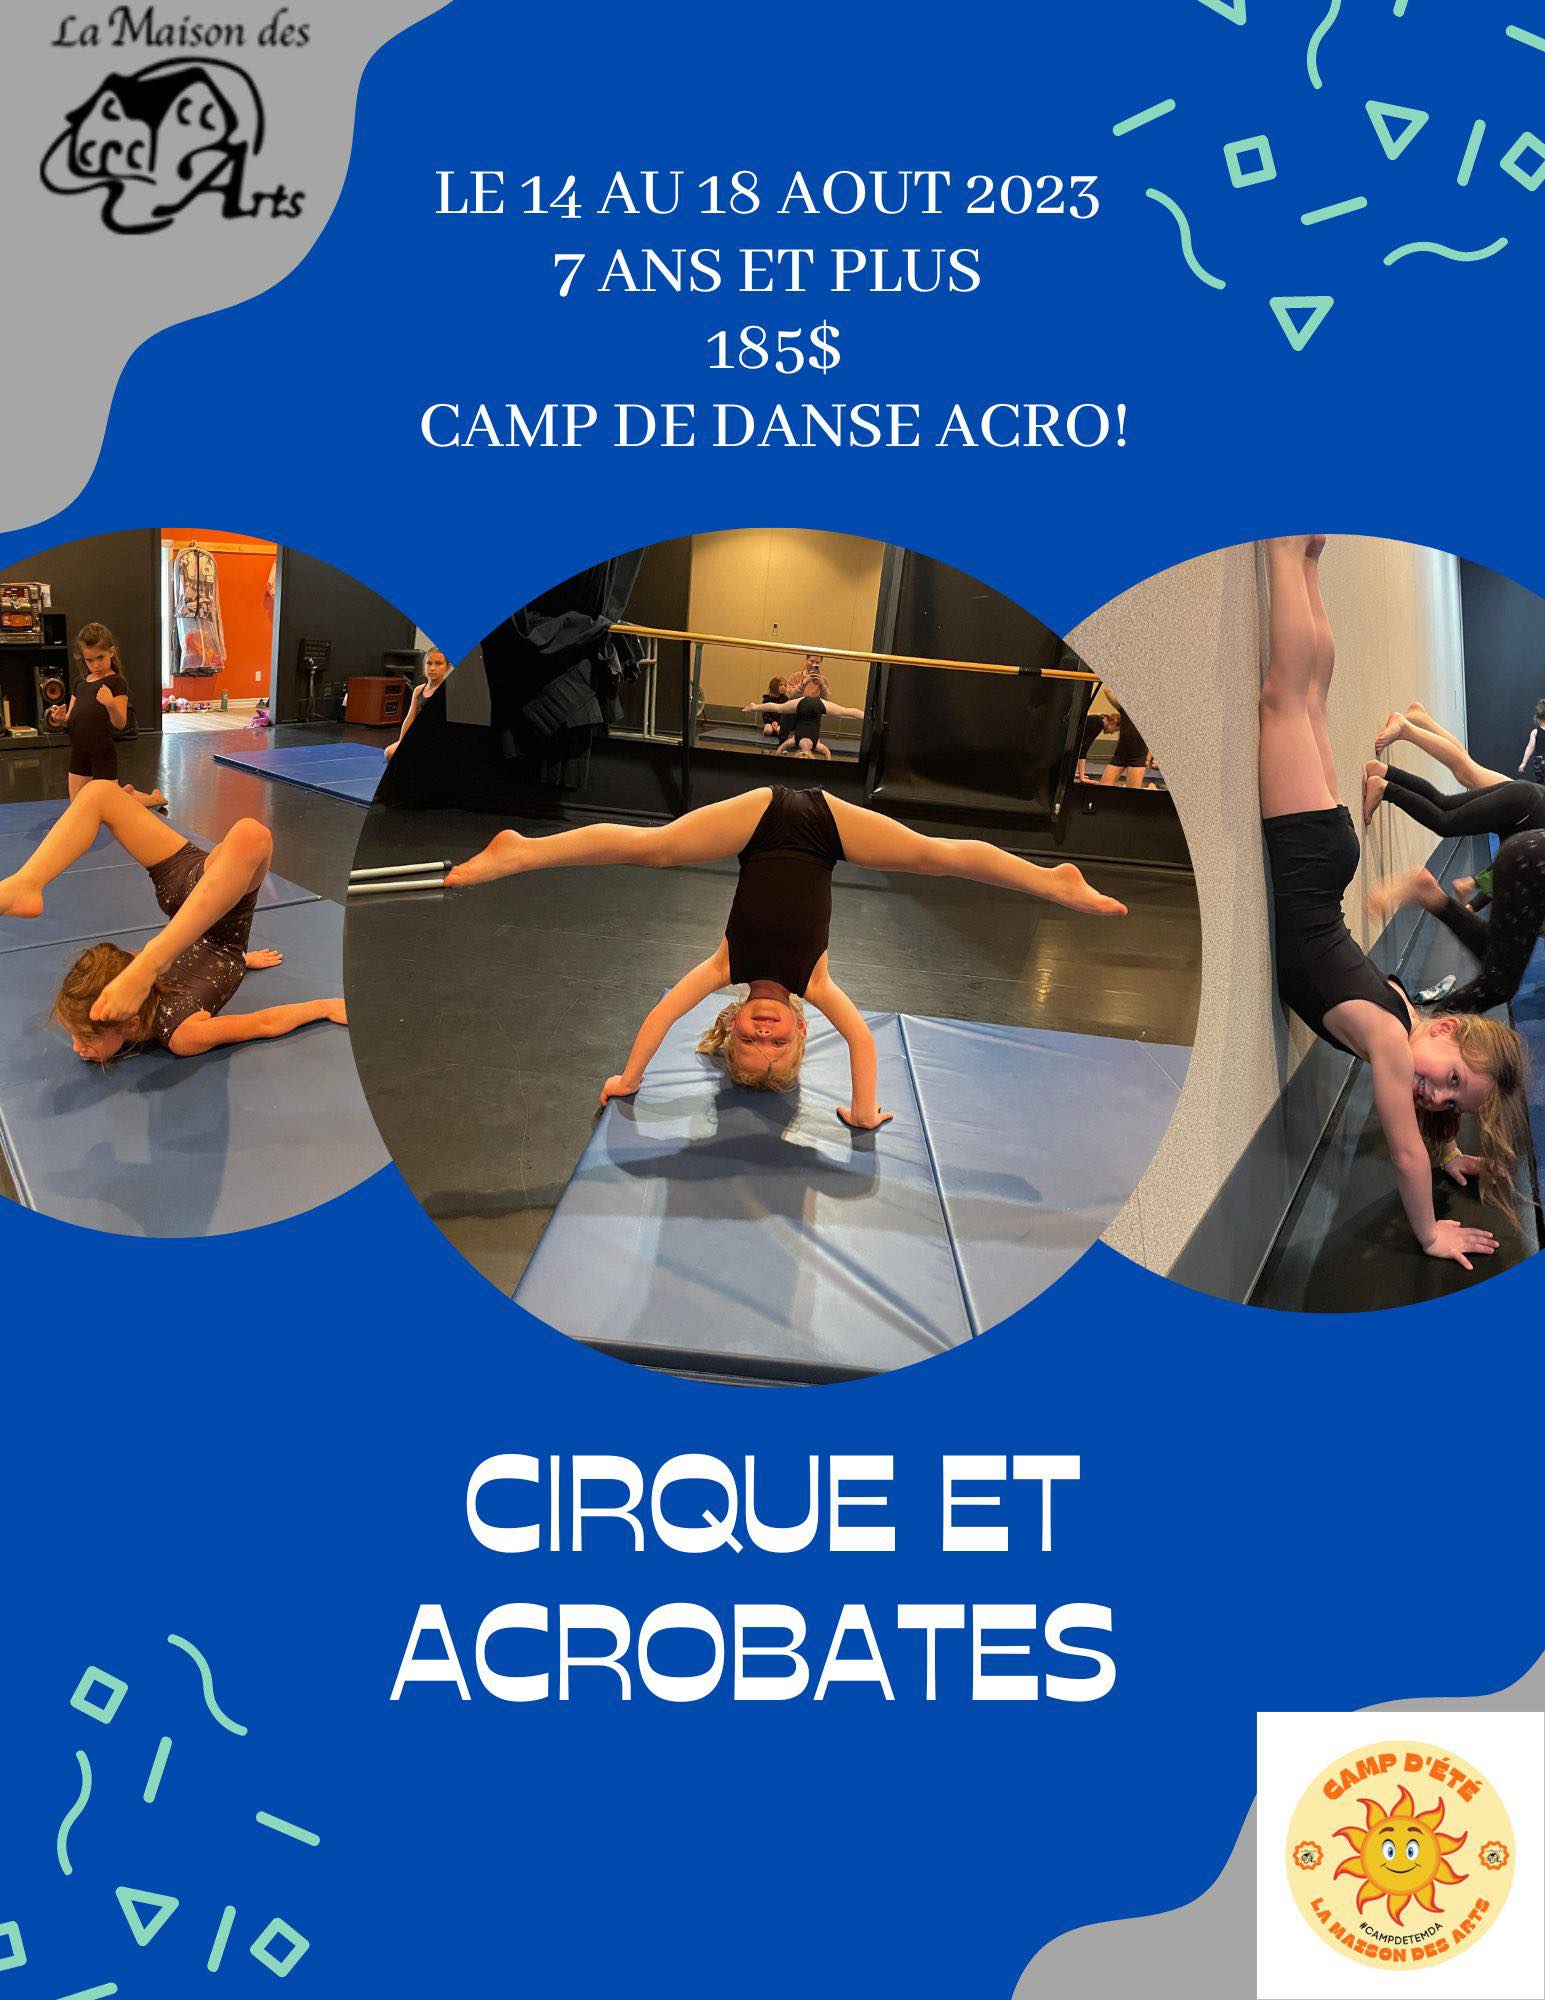 camp-de-danse-cirque-et-acrobates-14-au-18-ao-t-2023-la-maison-des-arts